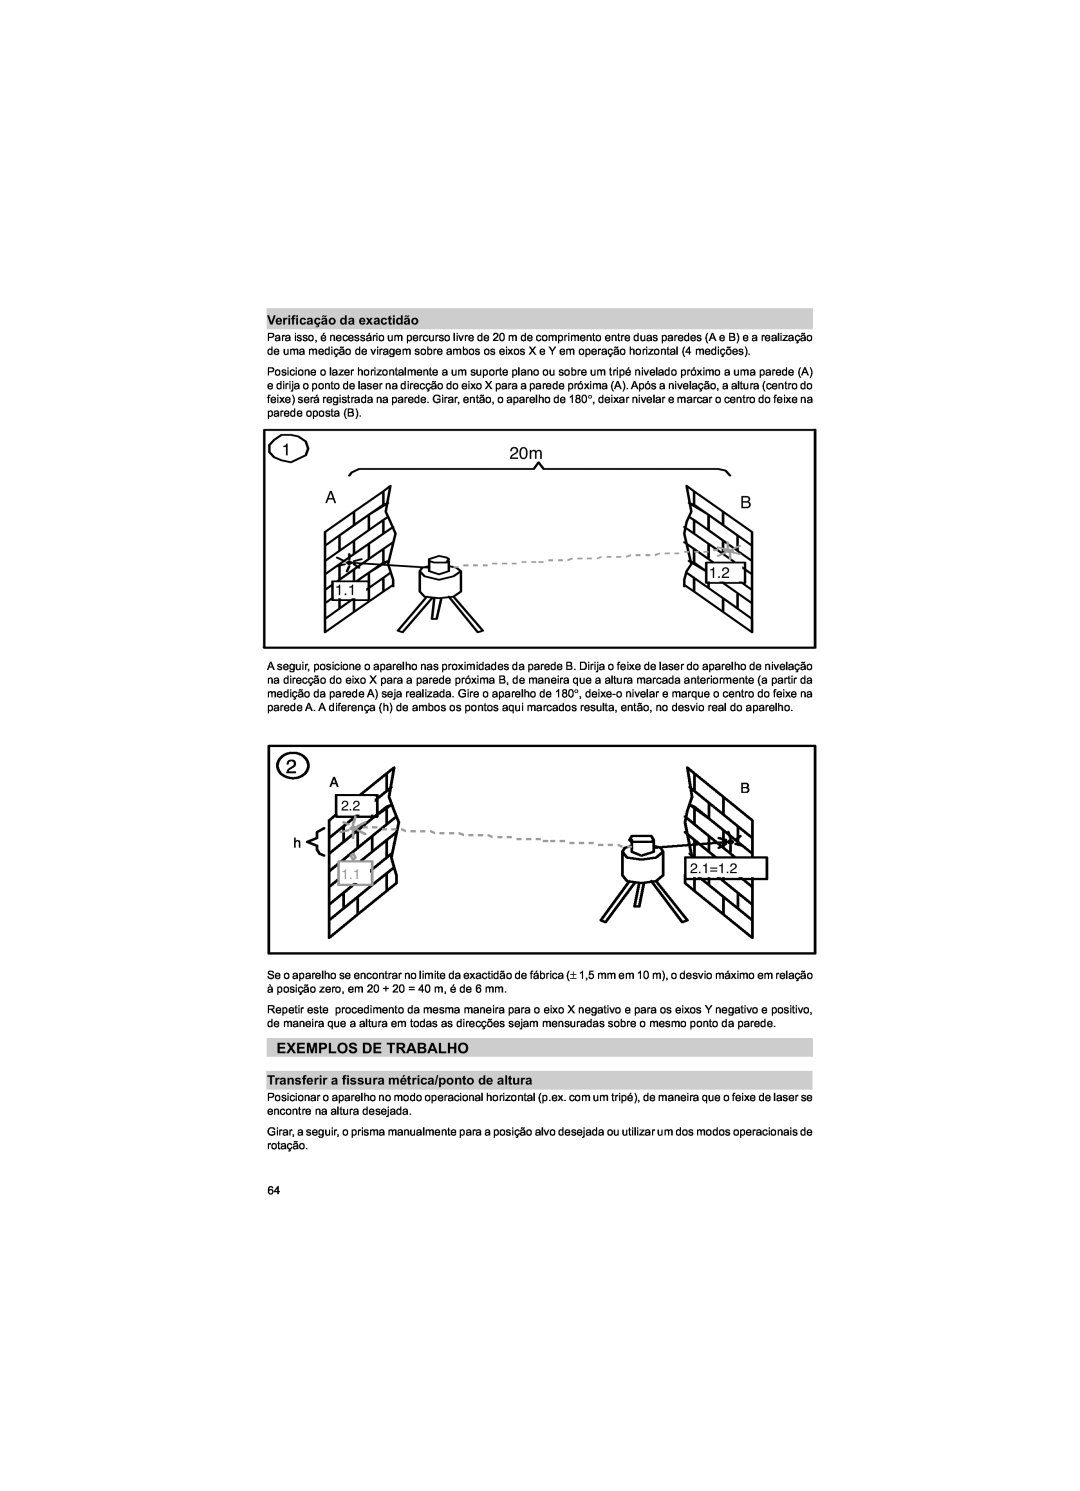 Trimble Outdoors HV301 Exemplos De Trabalho, Verificação da exactidão, Transferir a fissura métrica/ponto de altura, A 